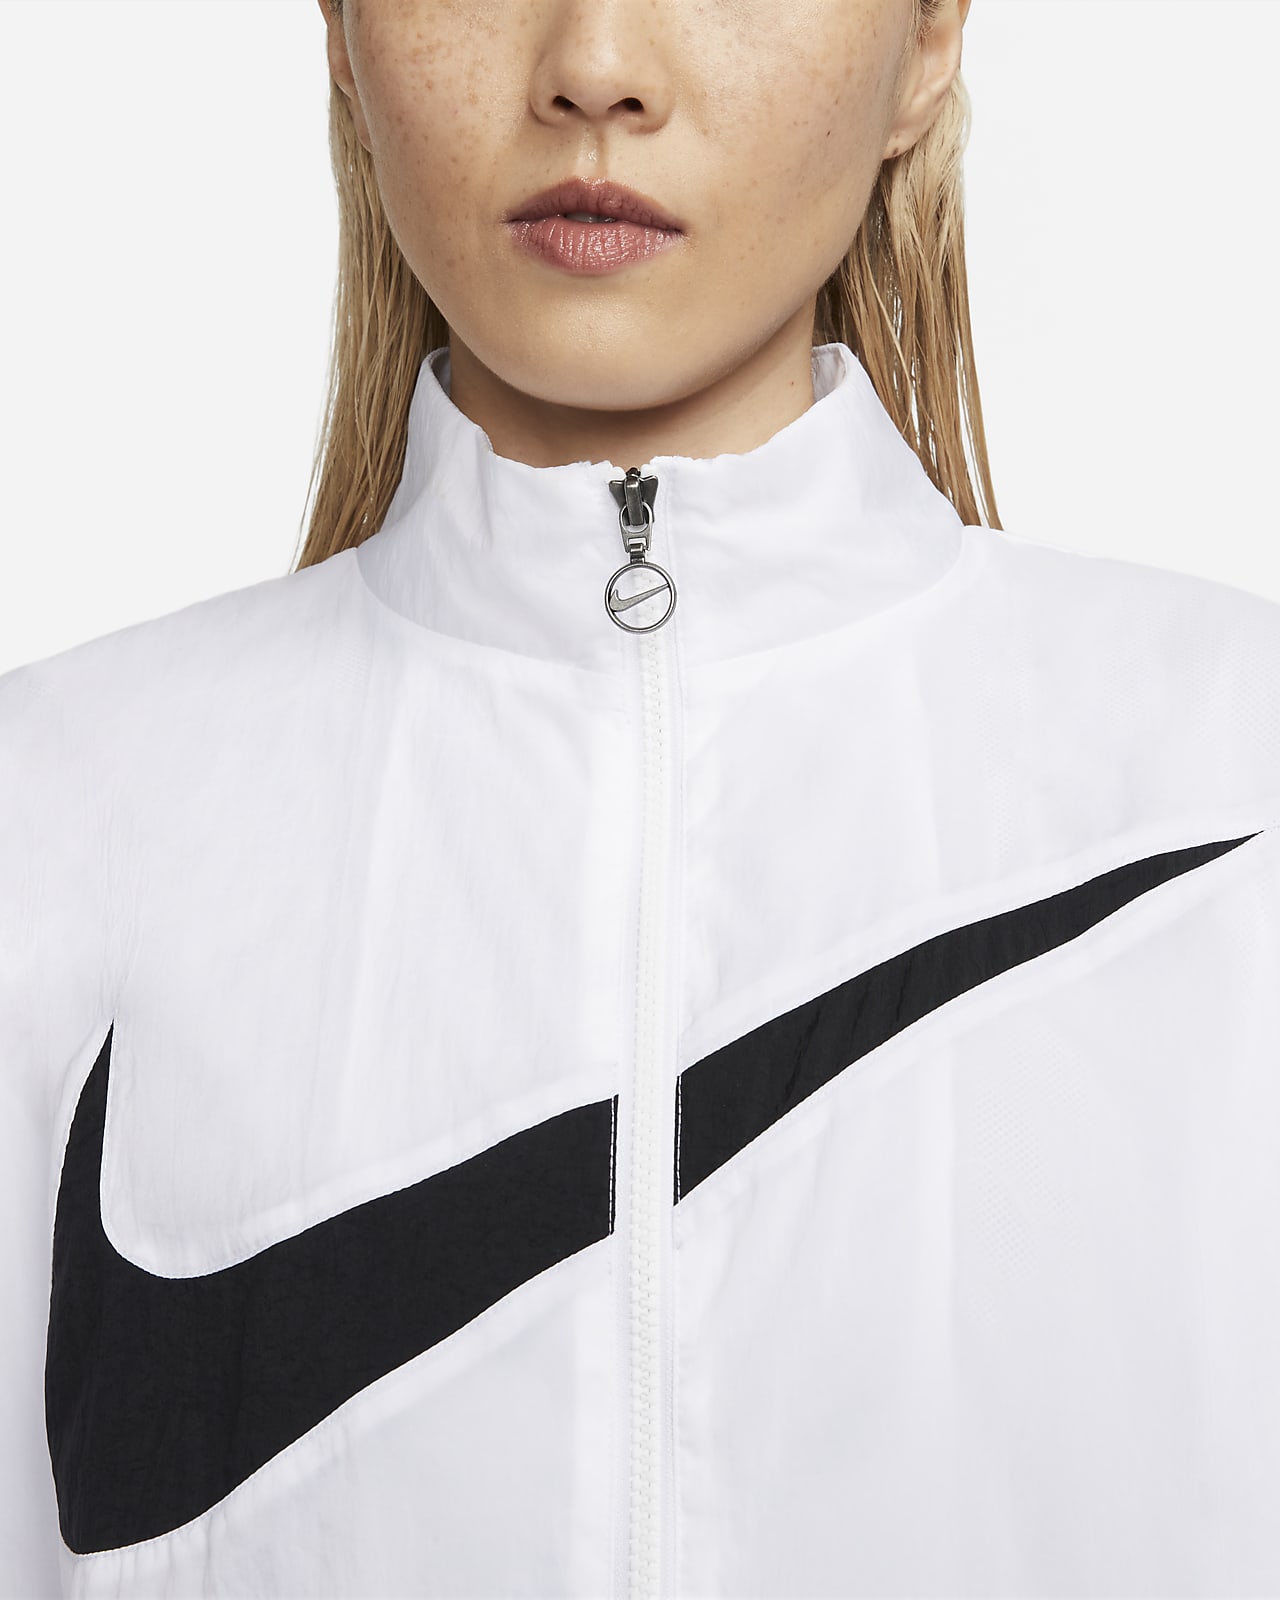 Nike ナイキ Woven Jacket スポーツウェア ウーブンジャケット